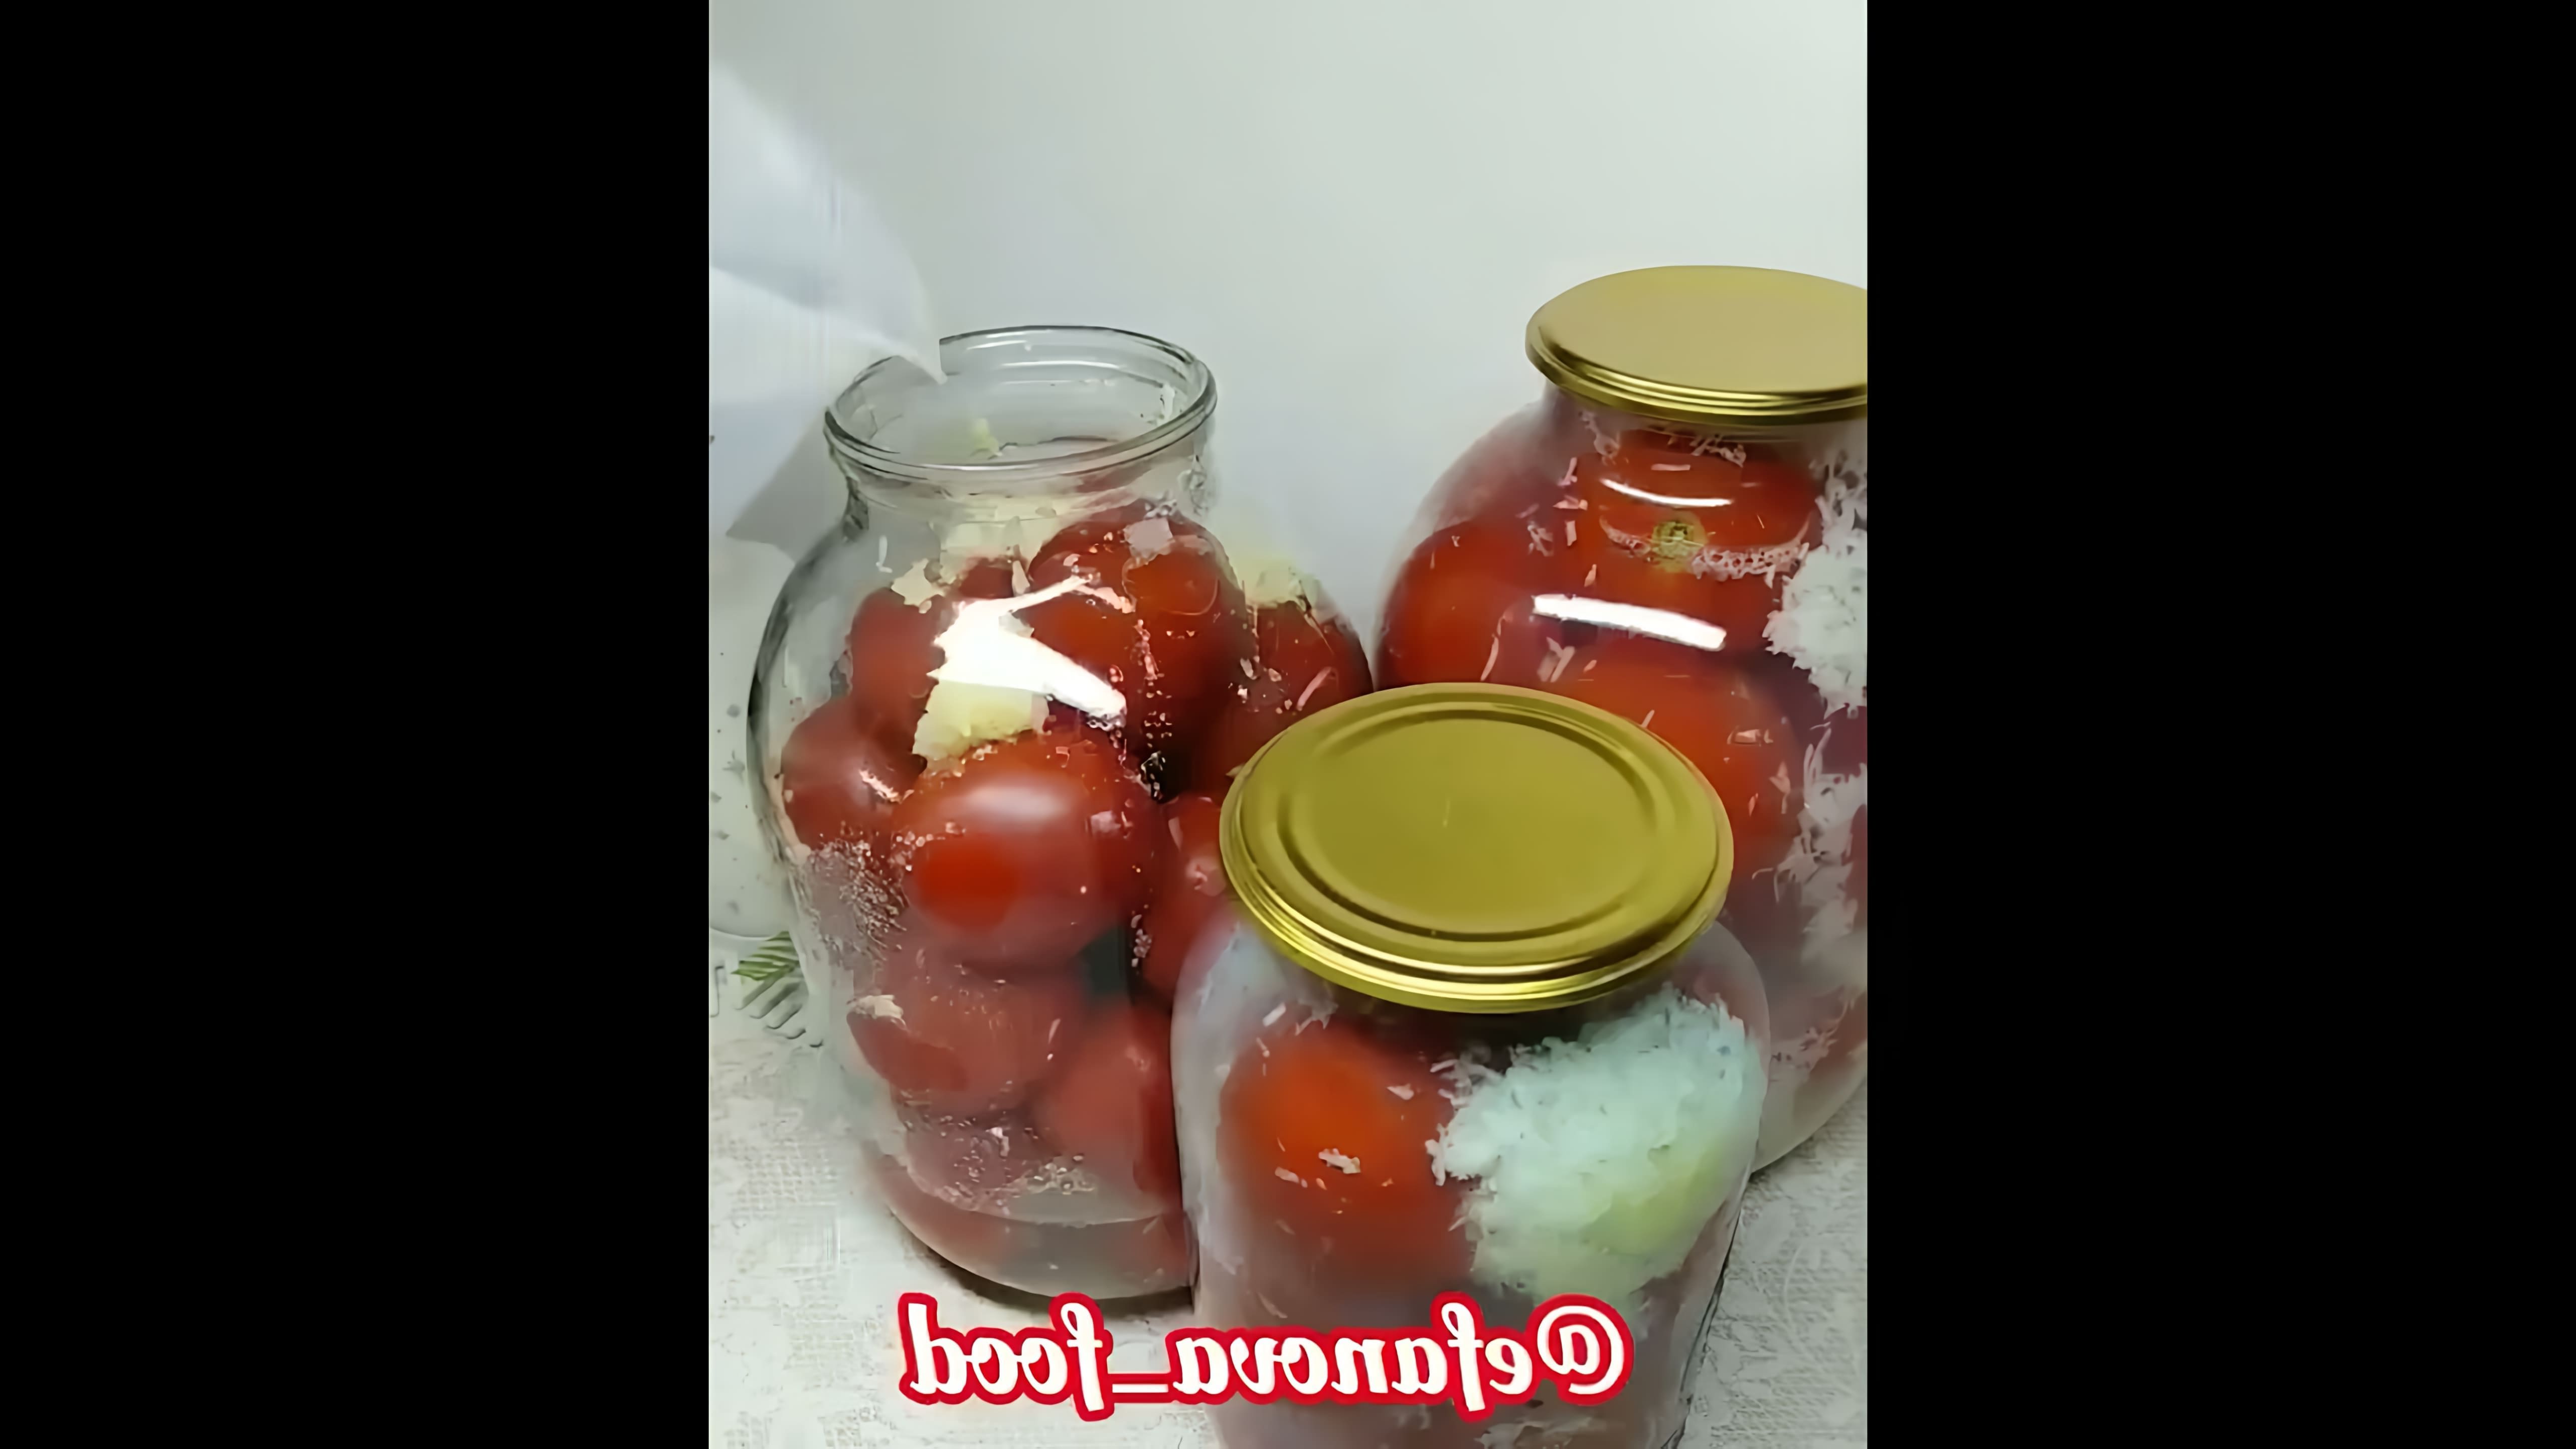 В этом видео показано, как приготовить помидоры под снегом на зиму